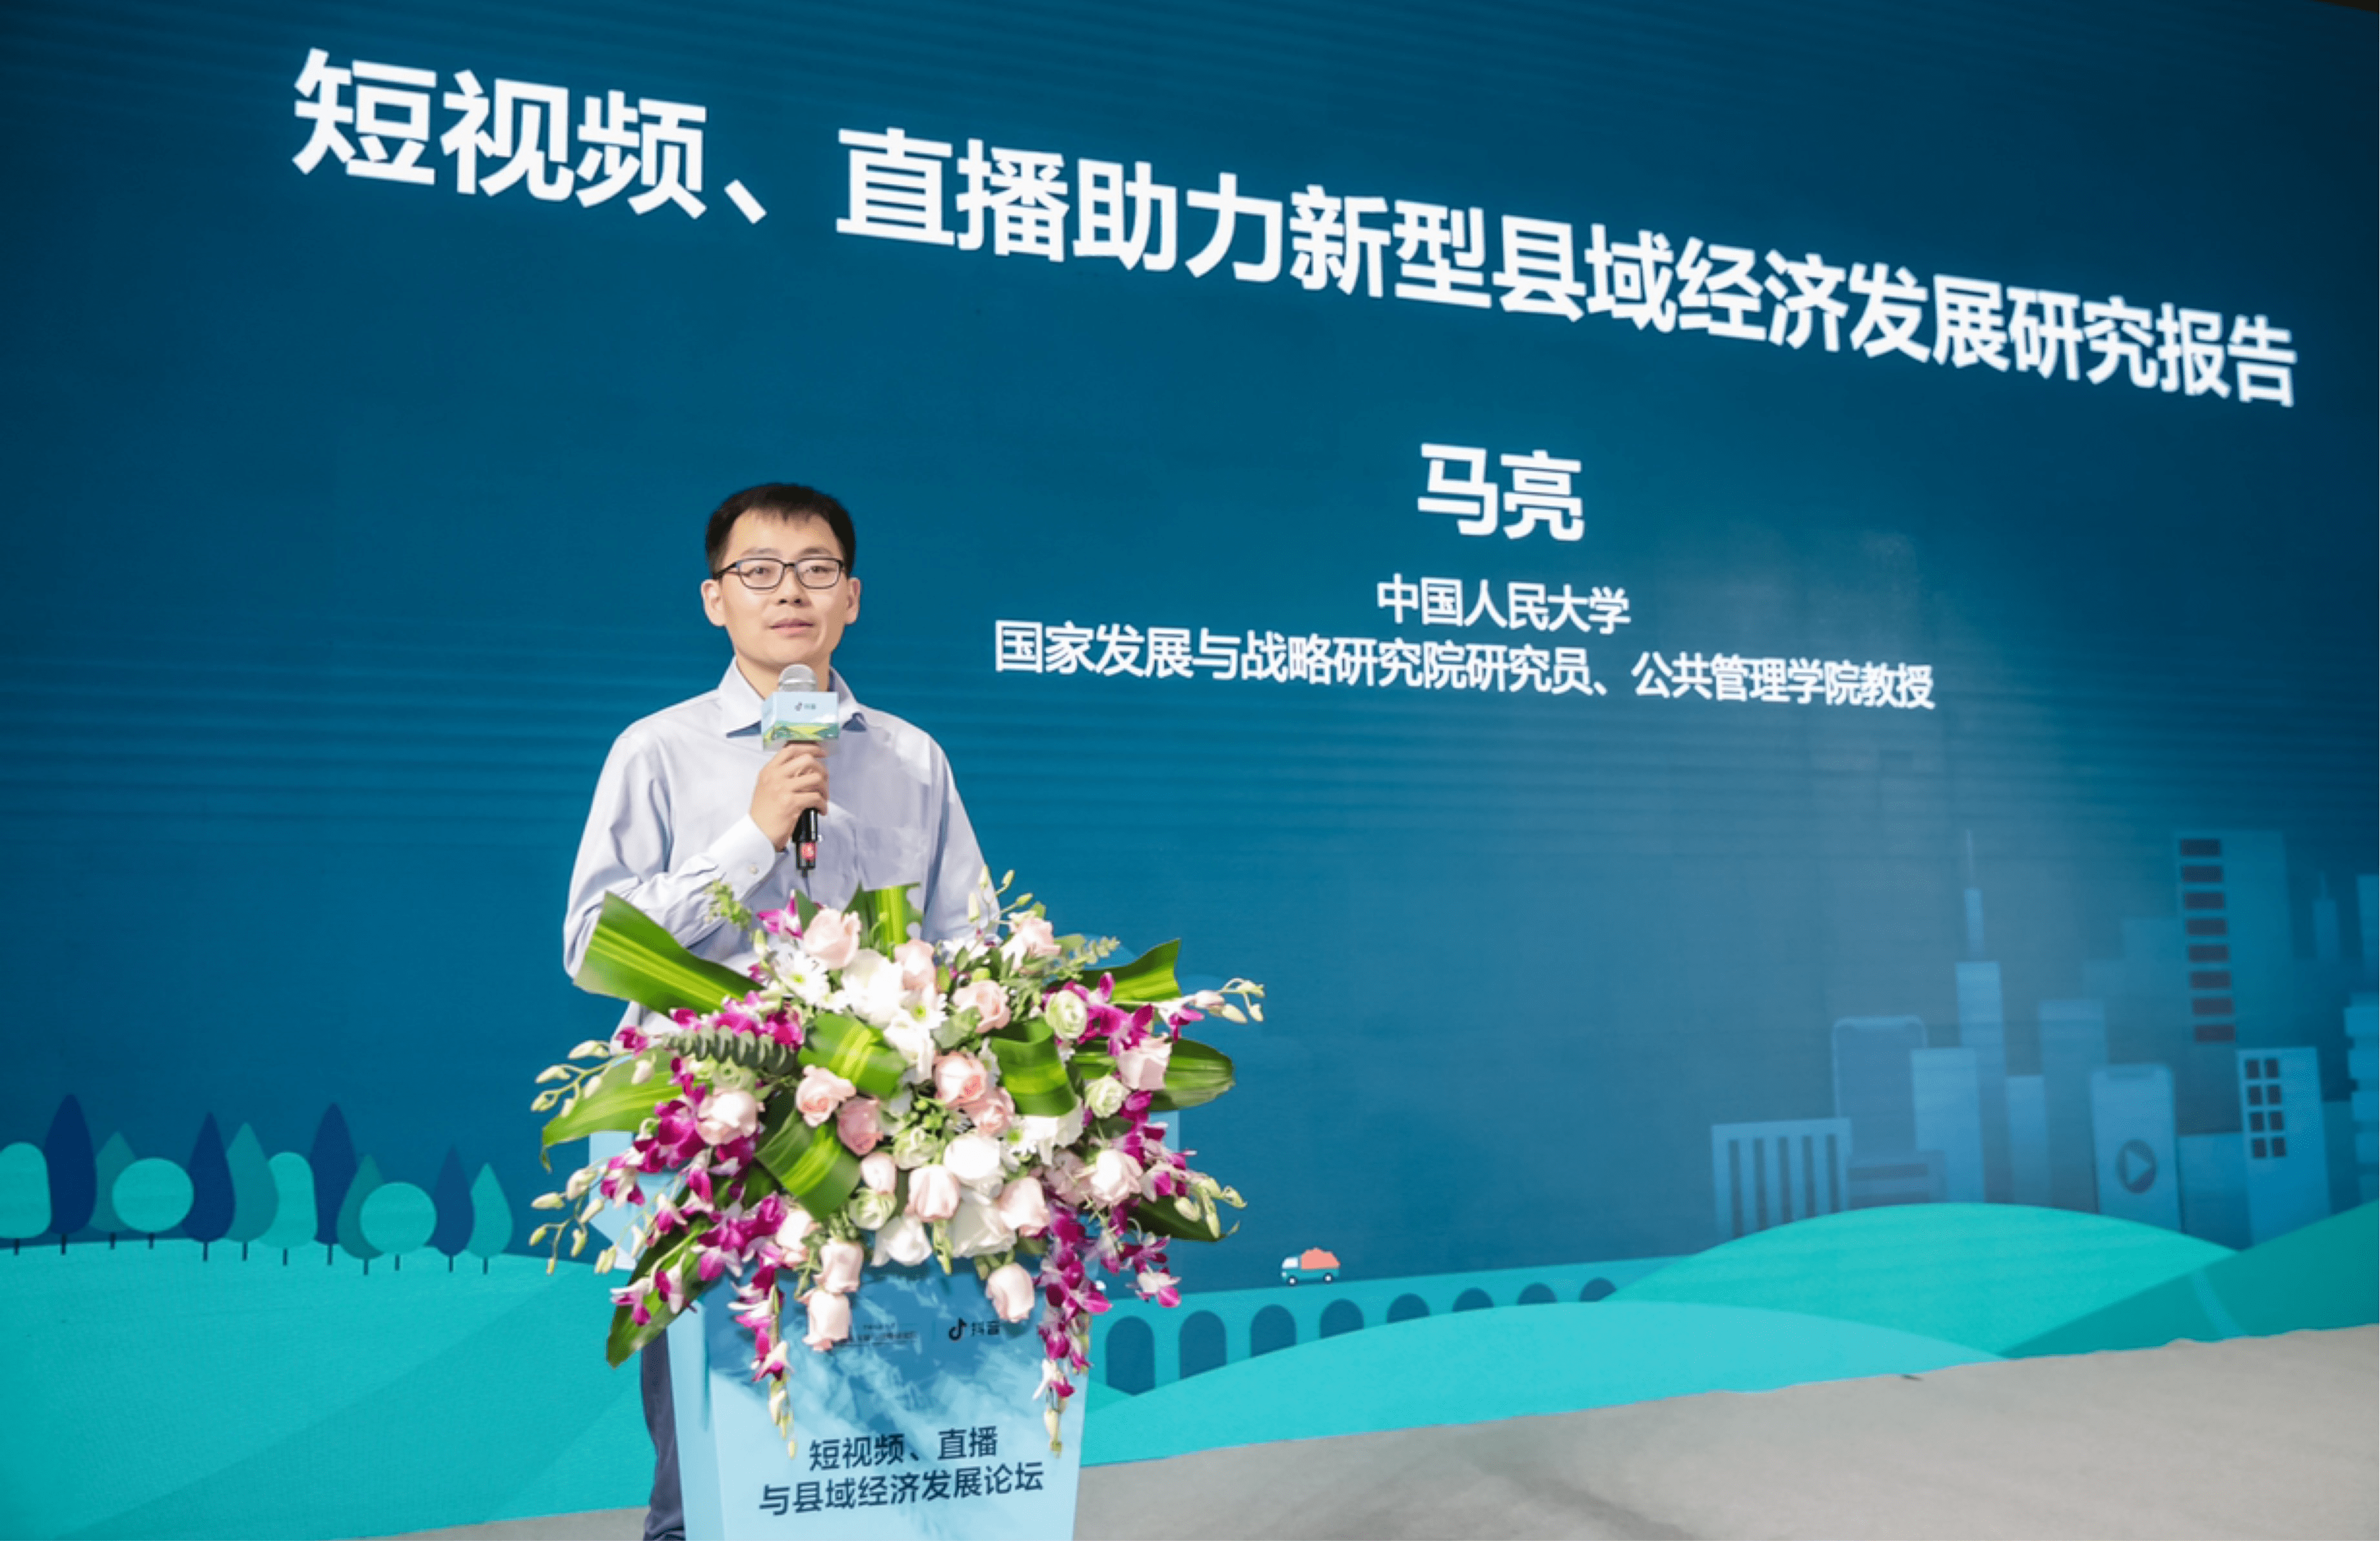 中国人民大学公共管理学院教授马亮介绍,县域经济是国民经济的基础